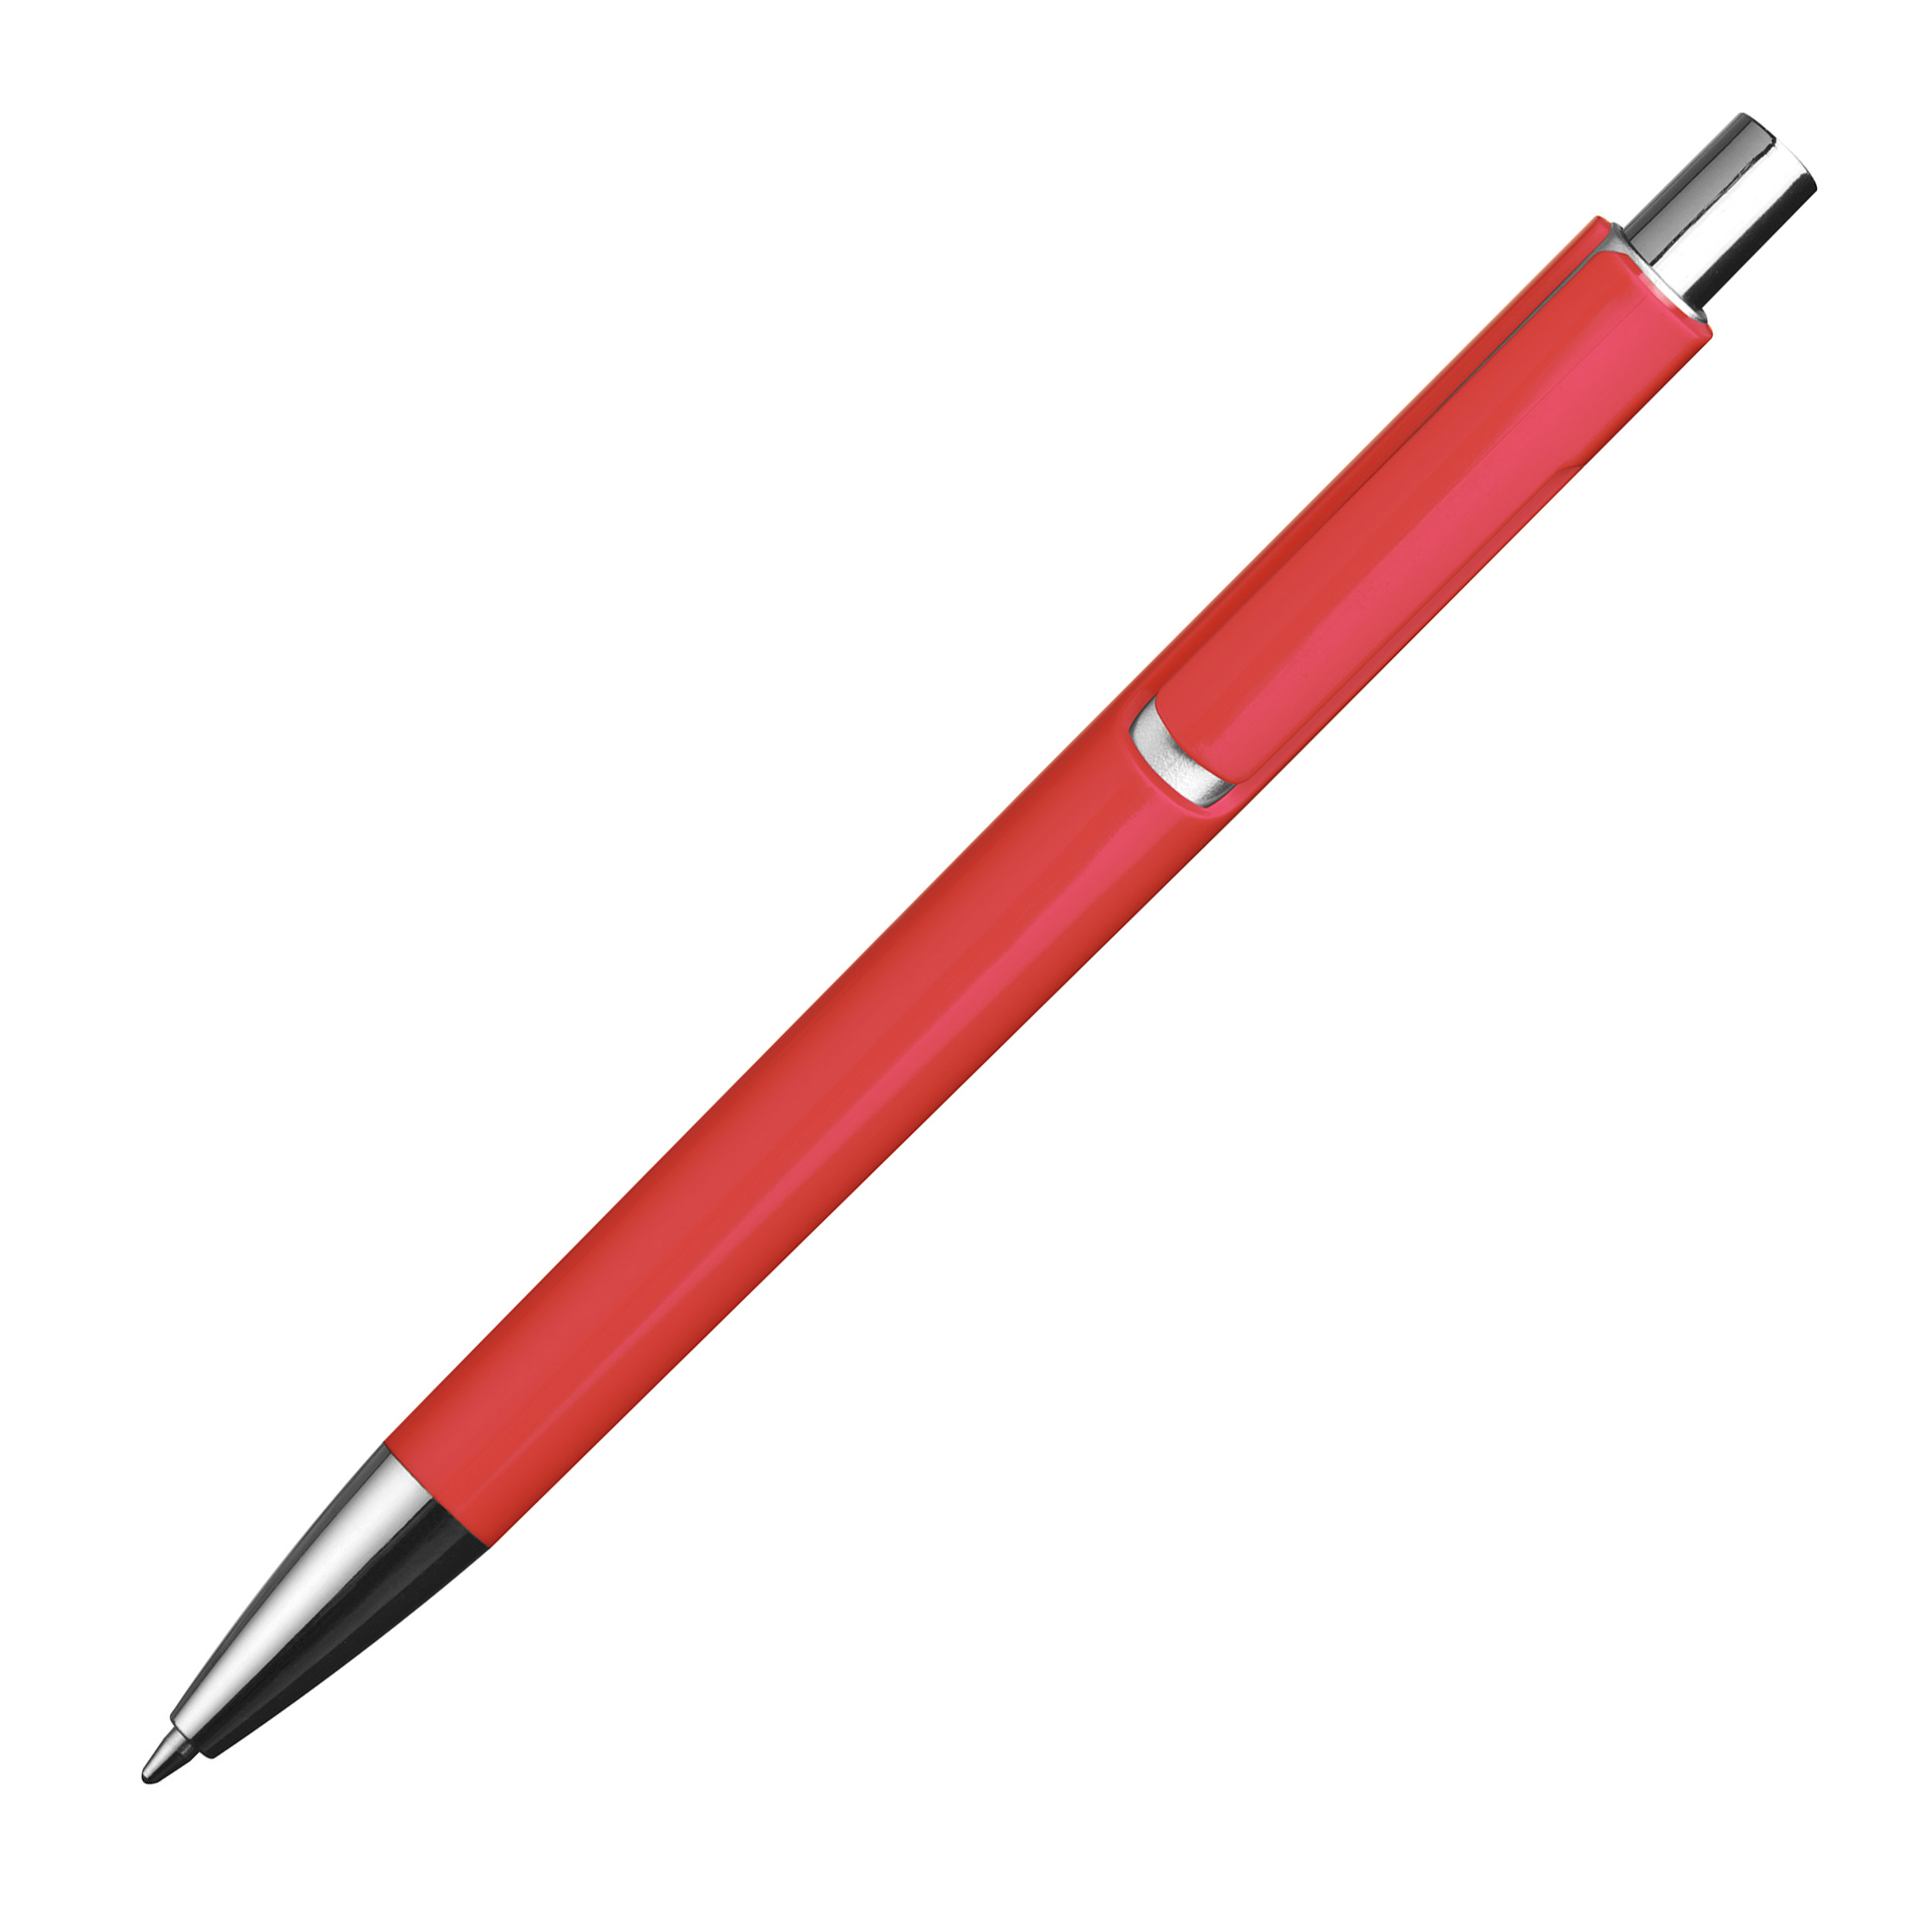 Kugelschreiber mit silbernen Applikationen